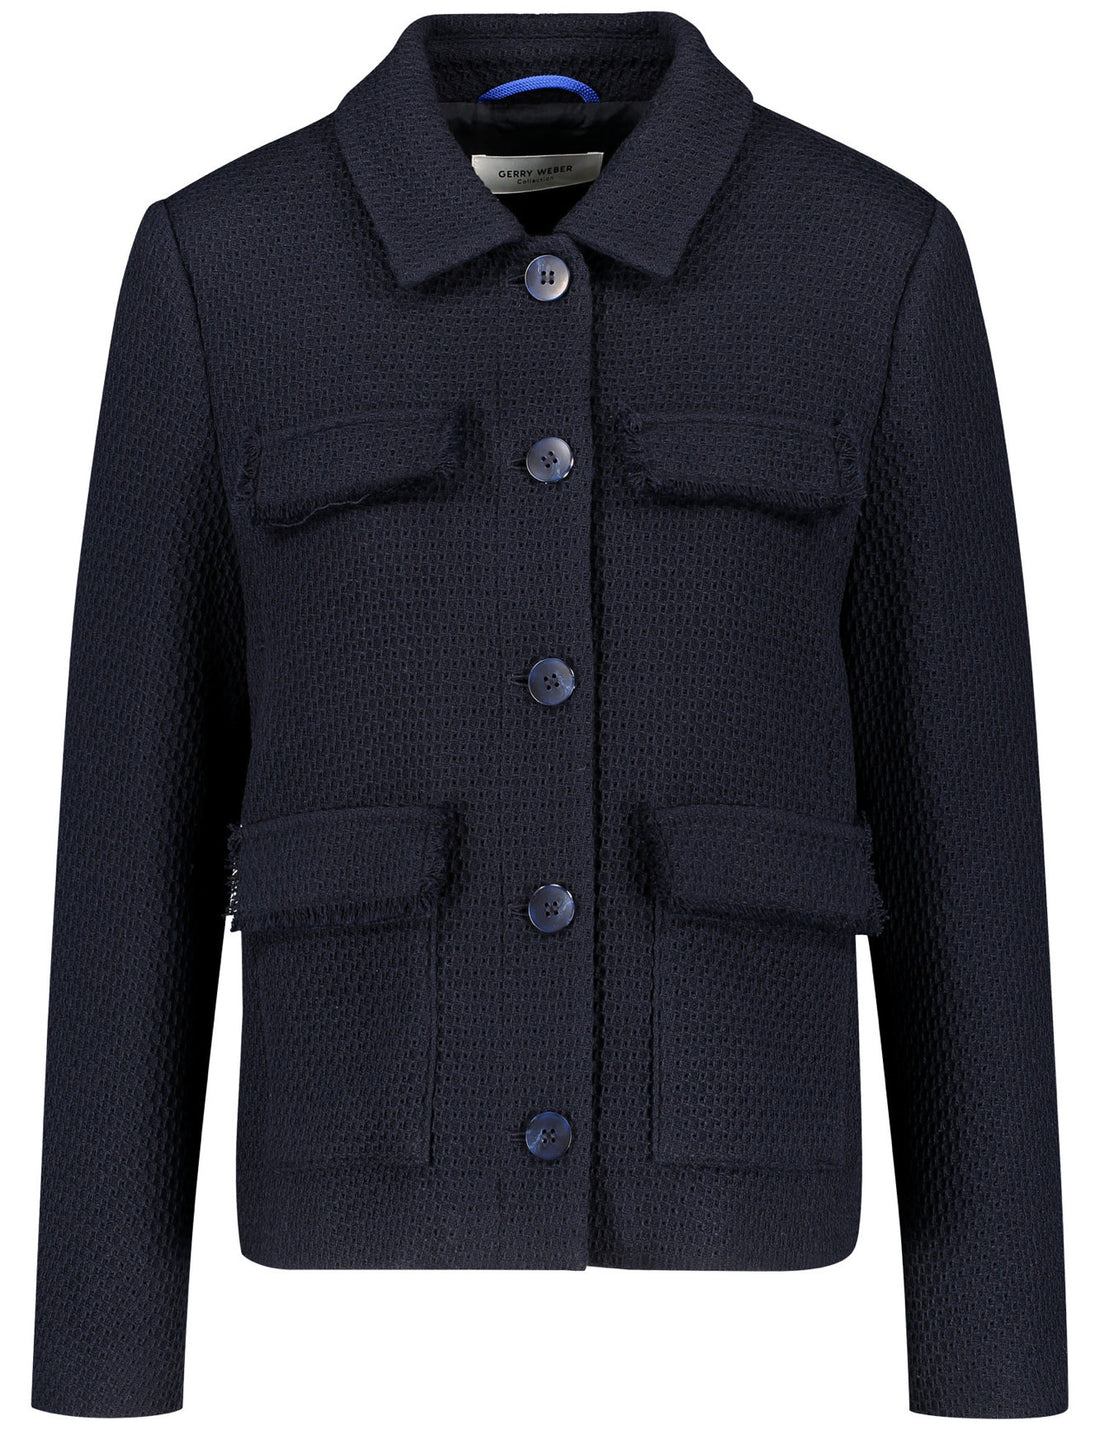 Blazer Jacket In A Textured Knit_330012-31252_80890_02